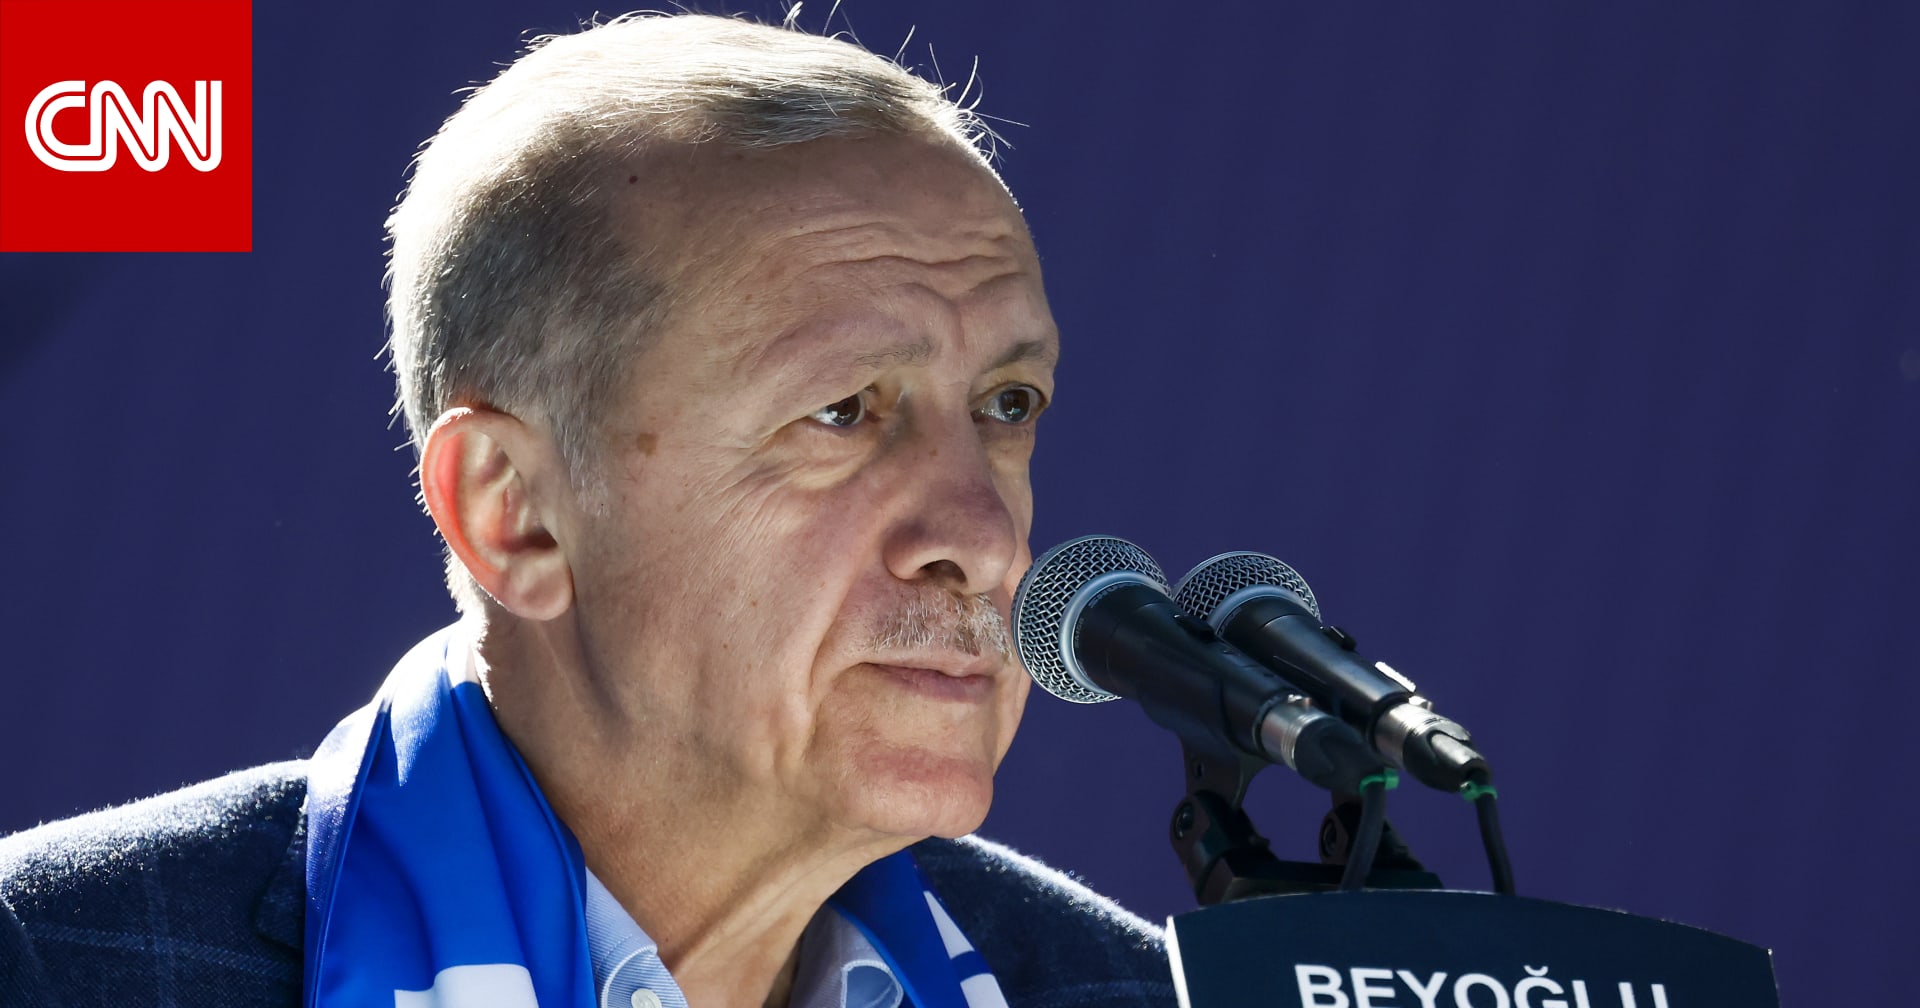 خبراء لـCNN: انتخابات الرئاسة التركية استفتاء على أردوغان والتغيير